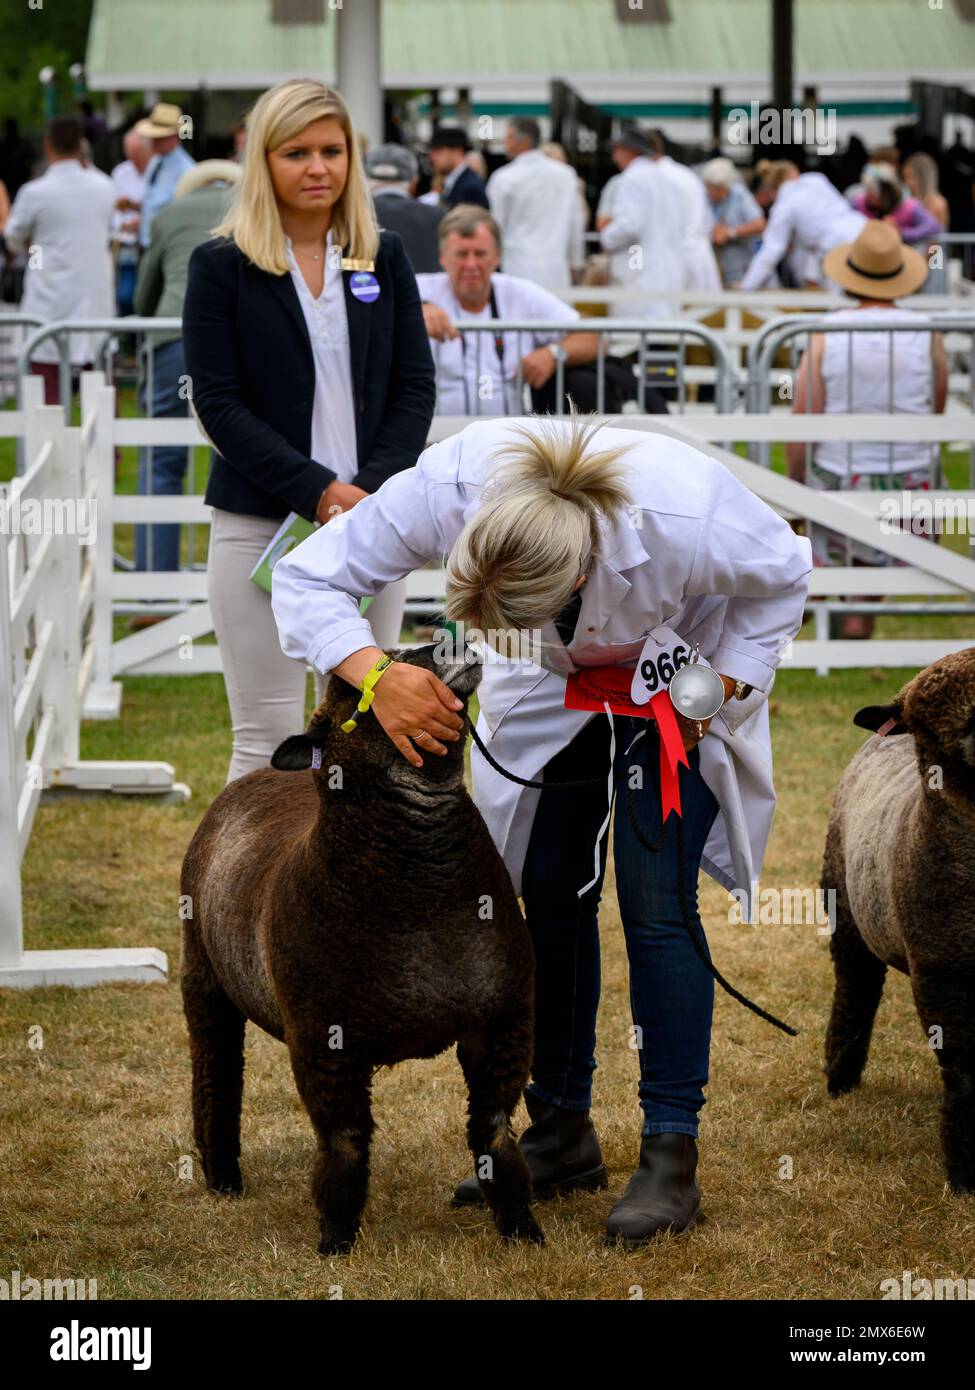 Pedigree Ryeland Sheep (gagnant du prix de la compétition, coupe d'argent, rosette rouge) - Great Yorkshire show Ground, Harrogate, Angleterre, Royaume-Uni. Banque D'Images